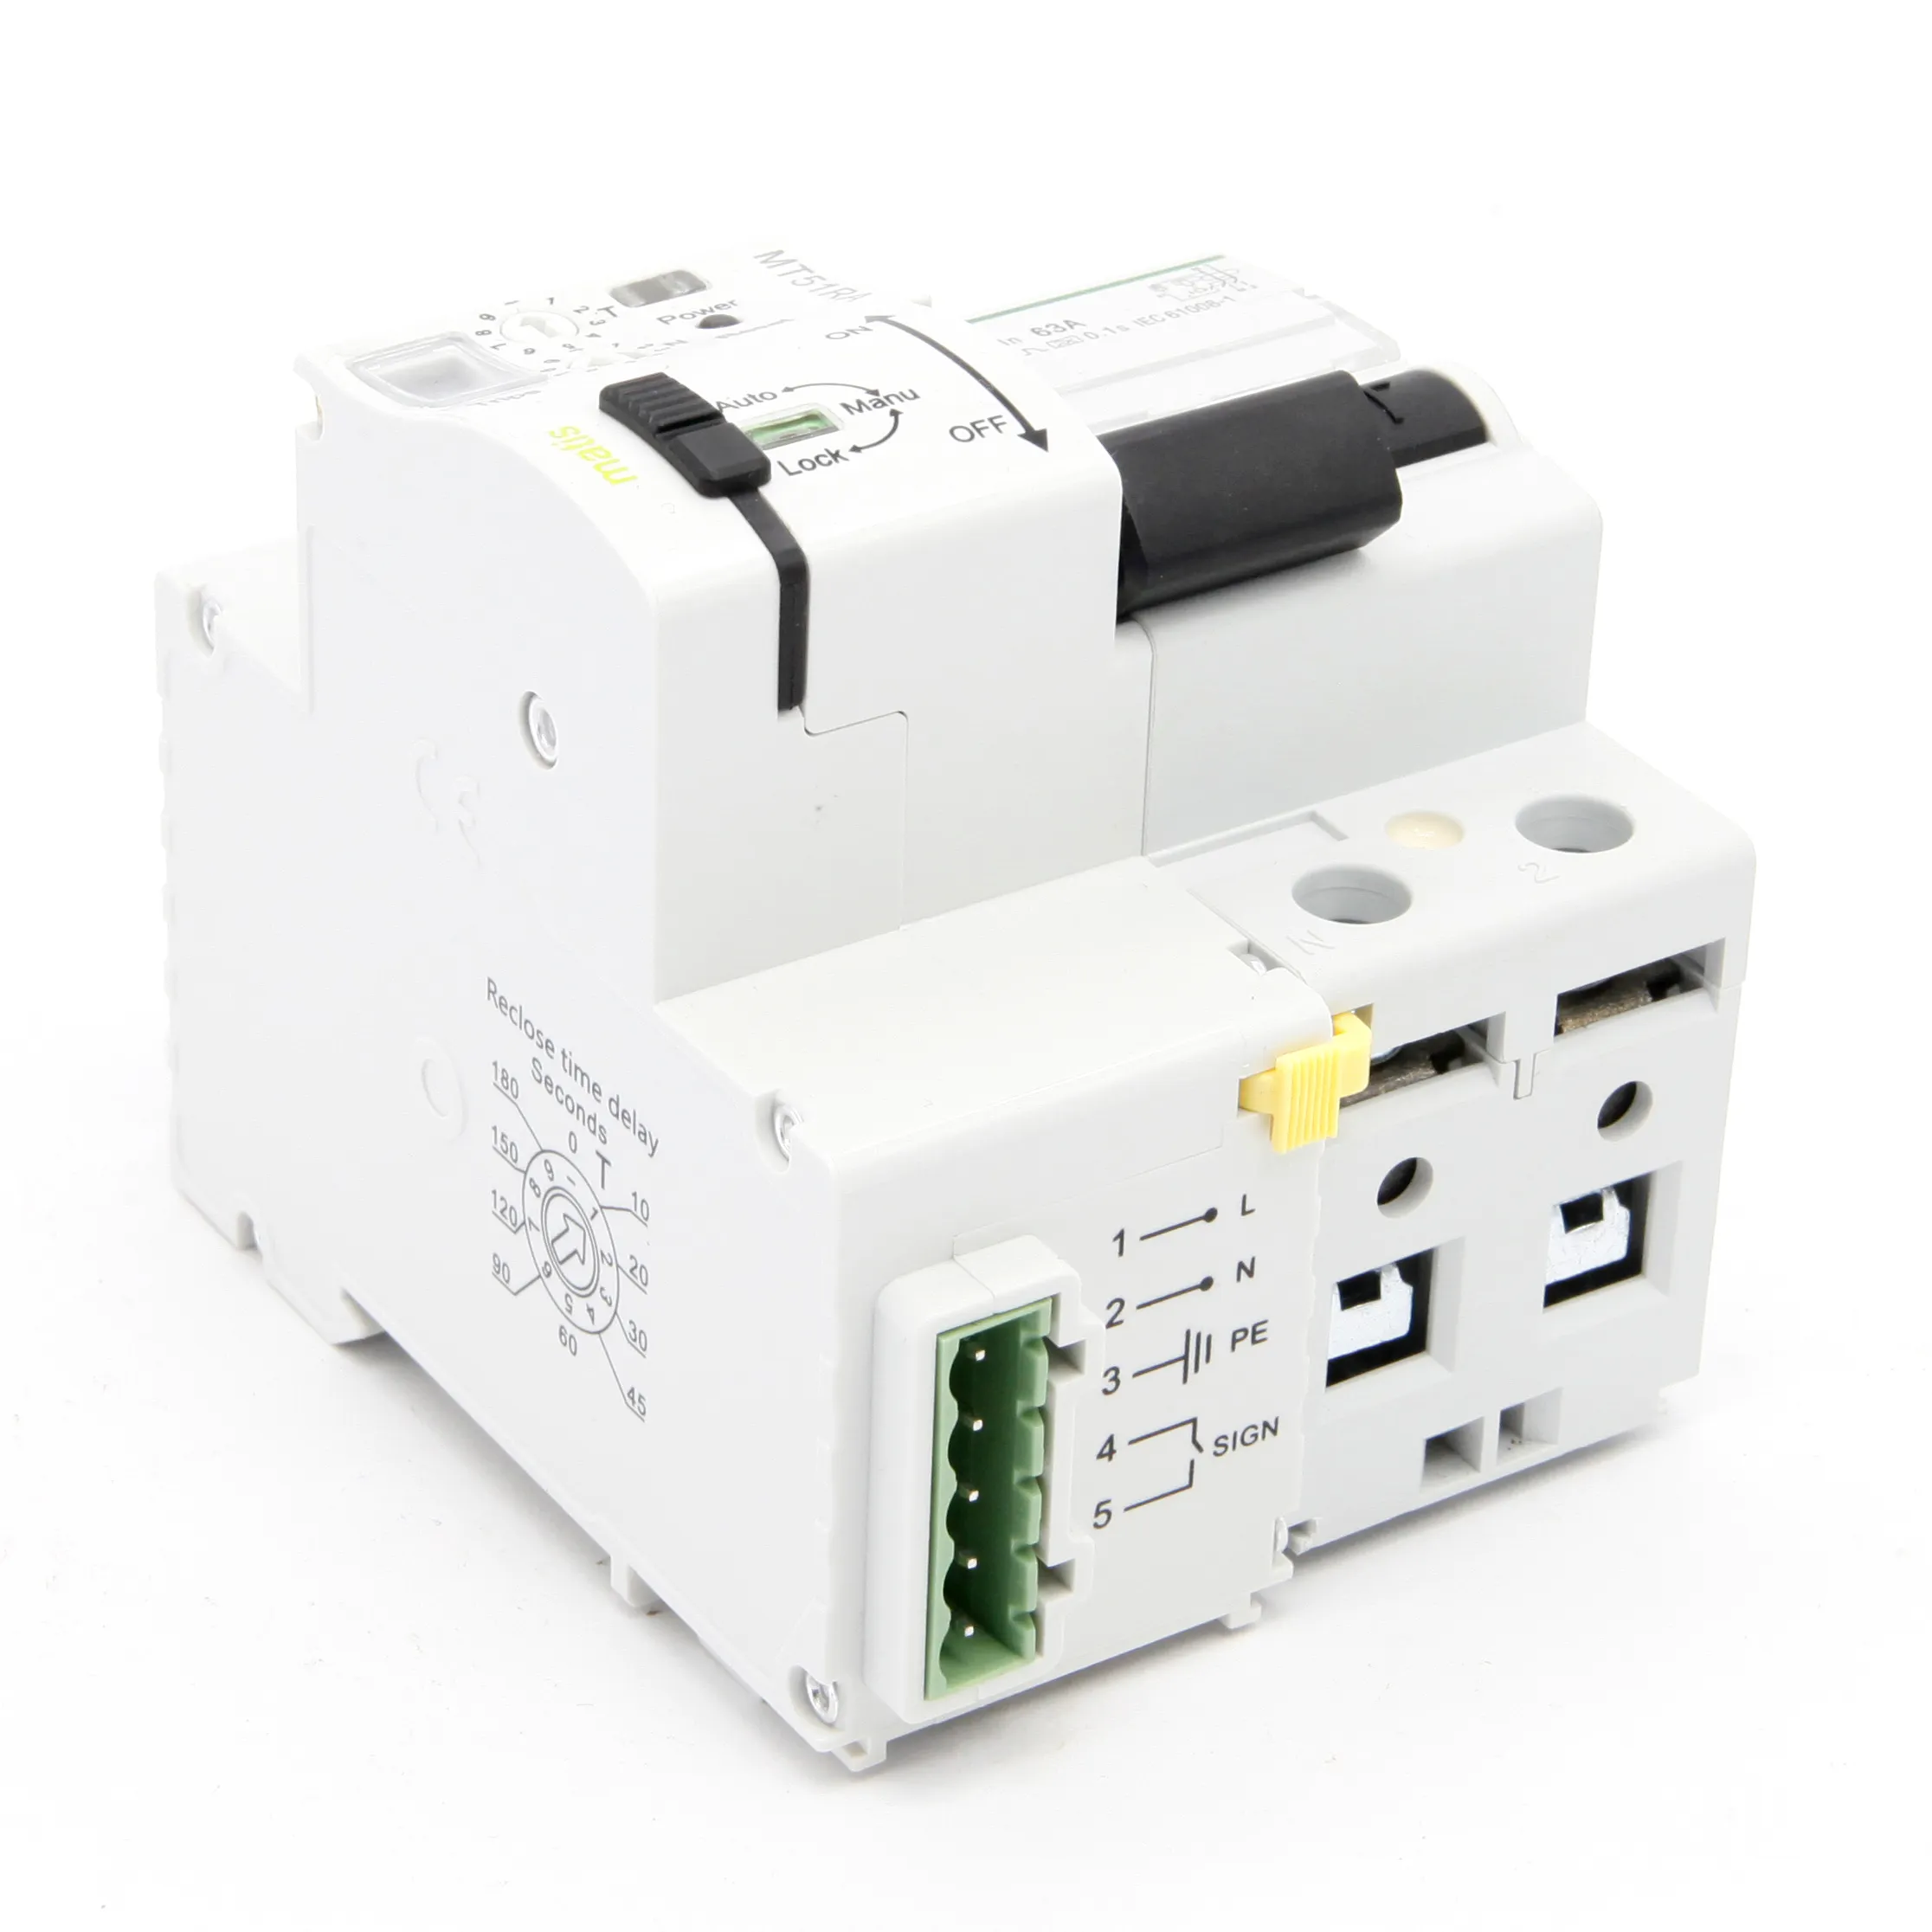 GYRC-ZN05 WiFi MCB - GEYA Electrical Equipment Supply